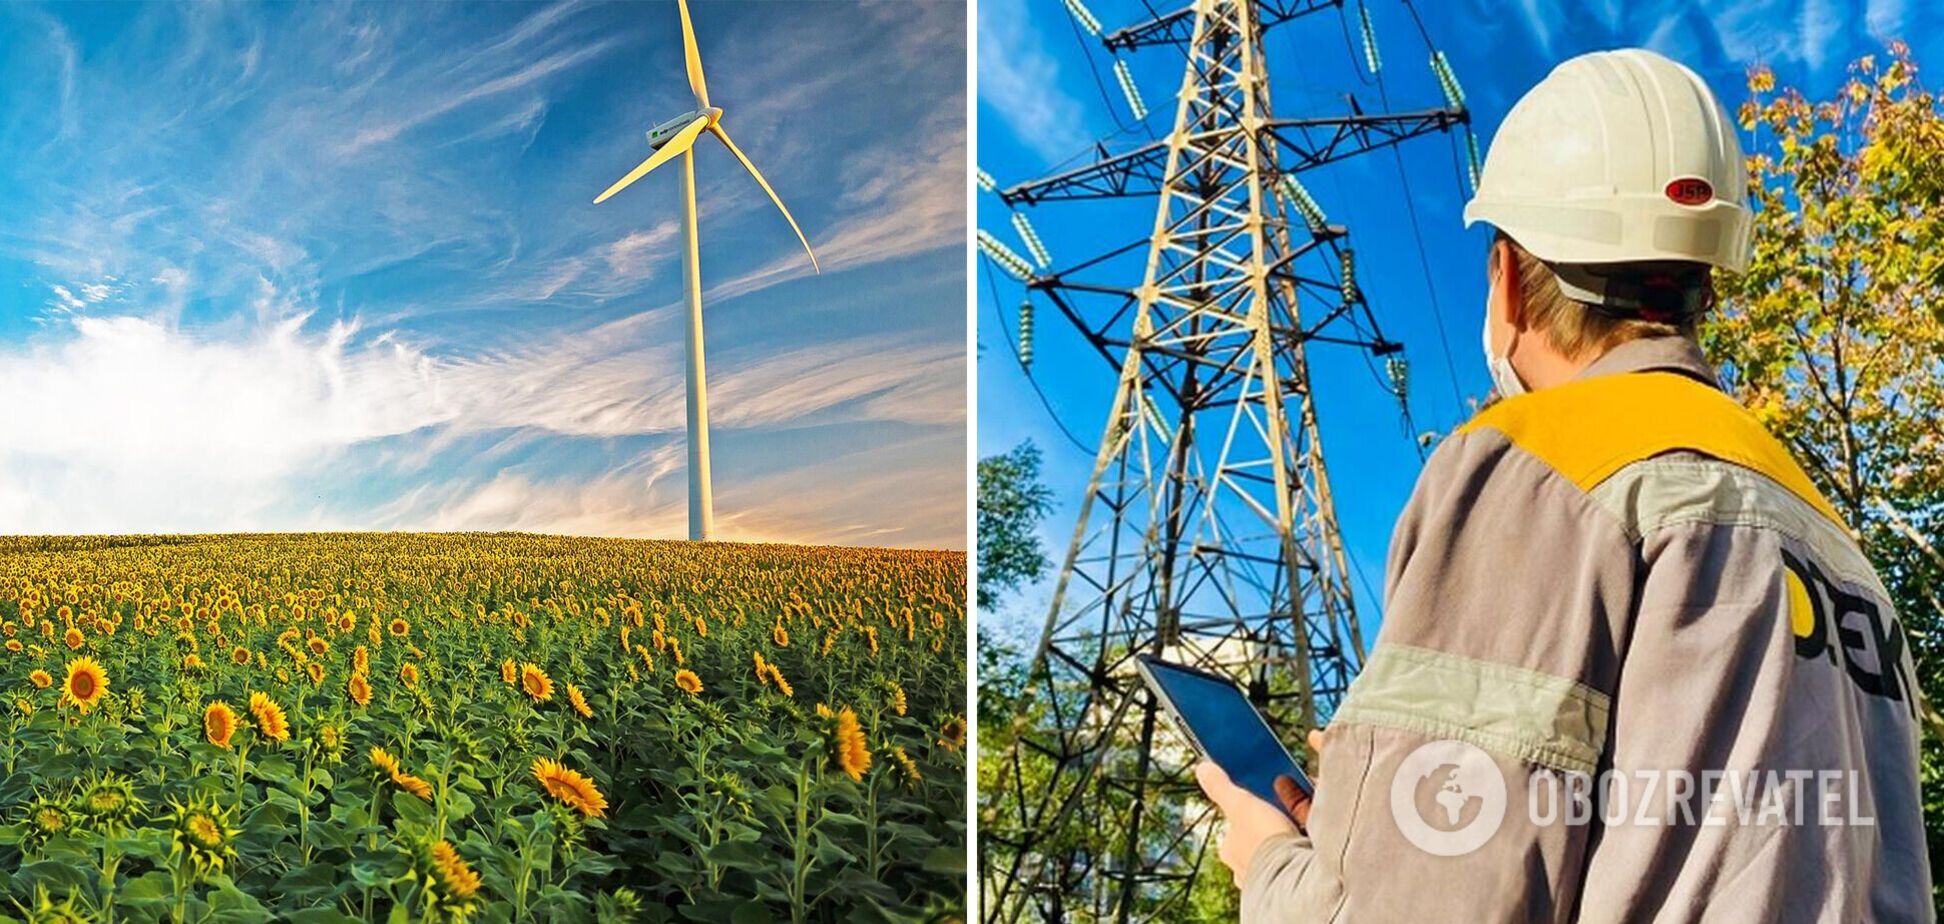 ДТЭК ВИЭ установил оборудование для более надежной связи между энергосистемами Украины и Европы